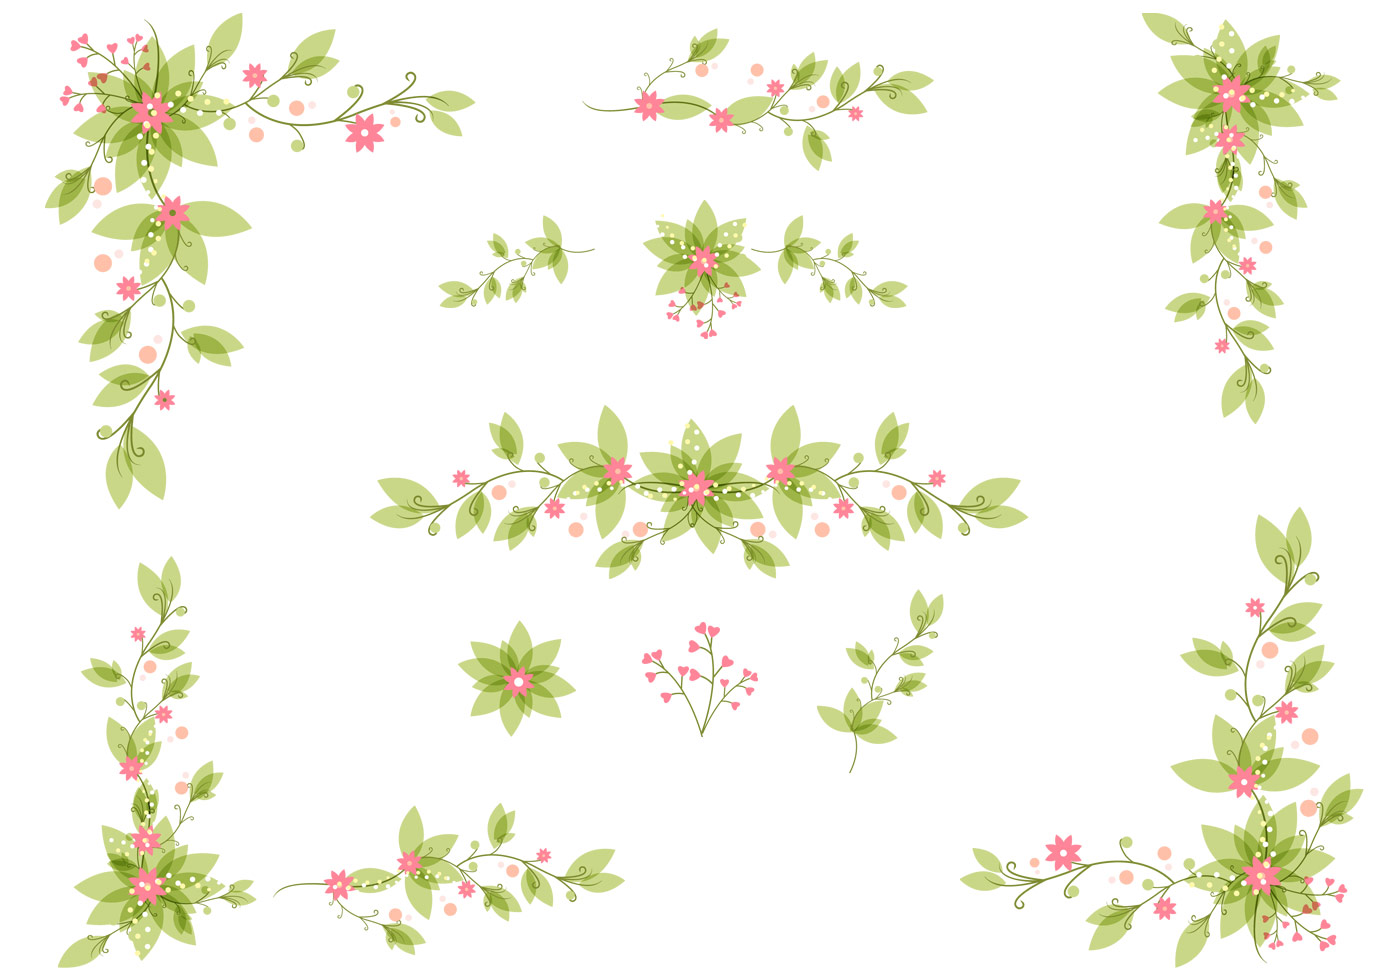 Download Elegant Floral Leaves Vector Set - Download Free Vectors, Clipart Graphics & Vector Art